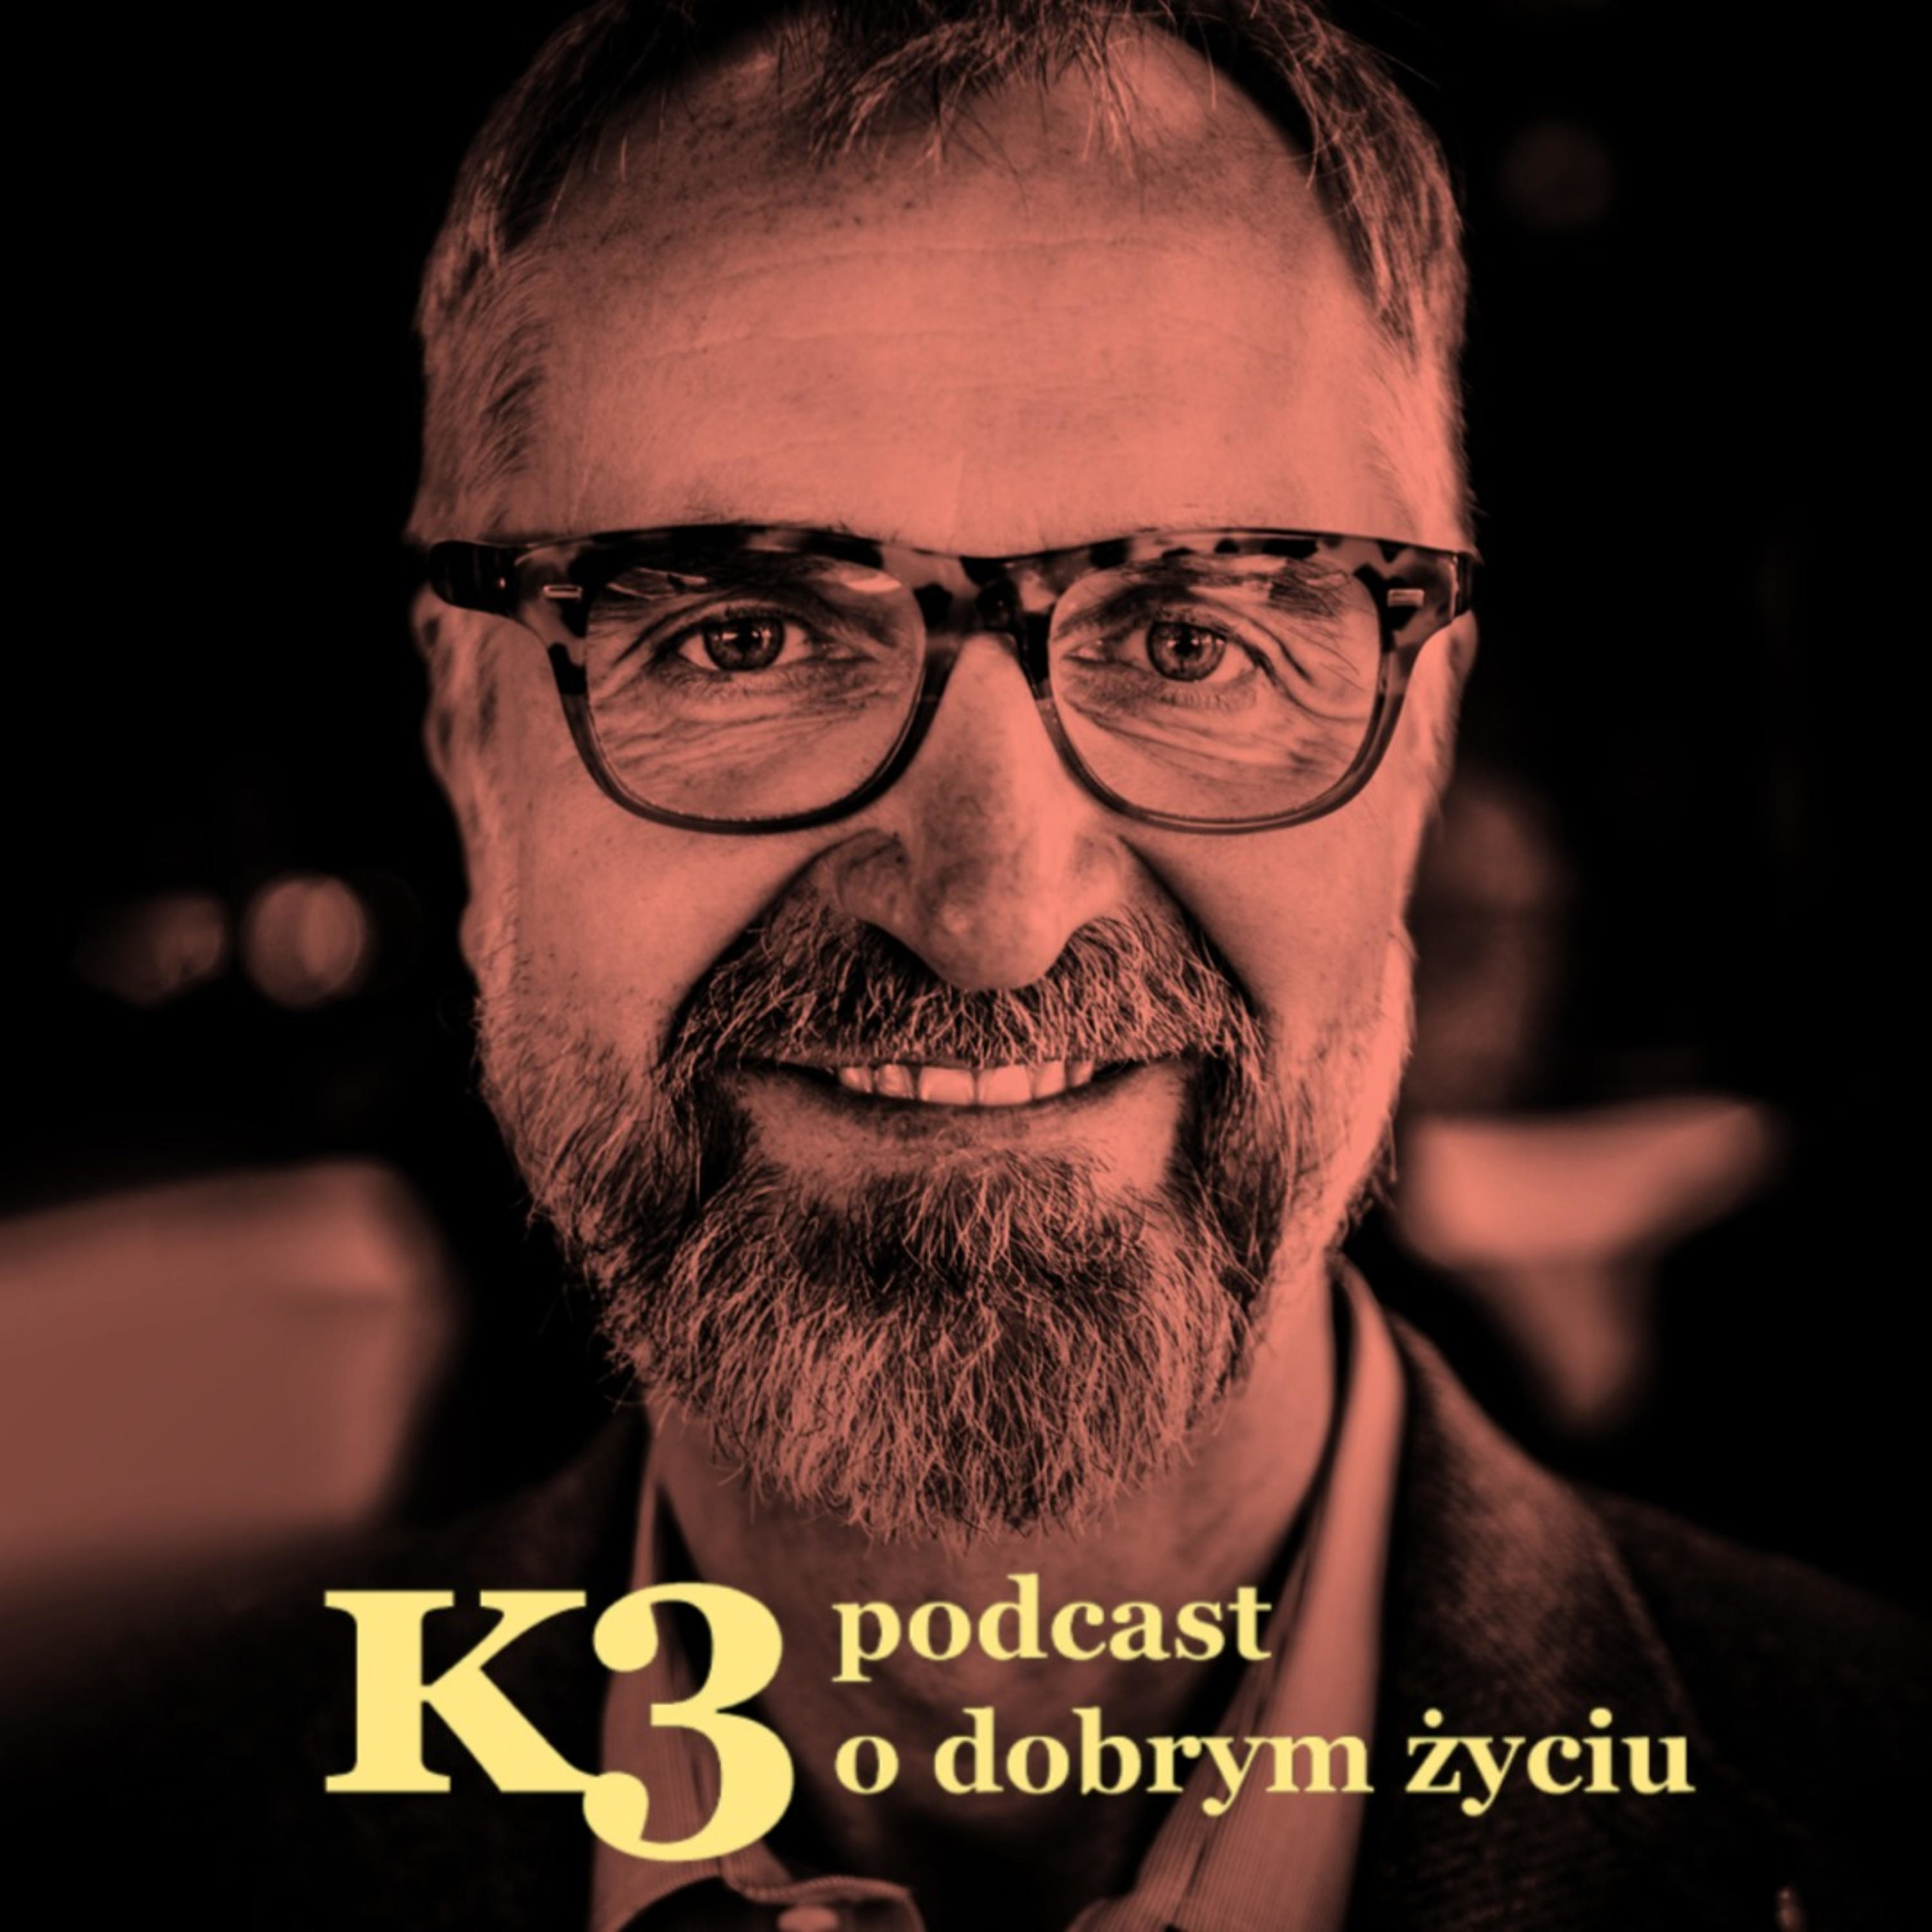 okładka podcastu K3, twarz prowadzącego Dariusza Bugalskiego